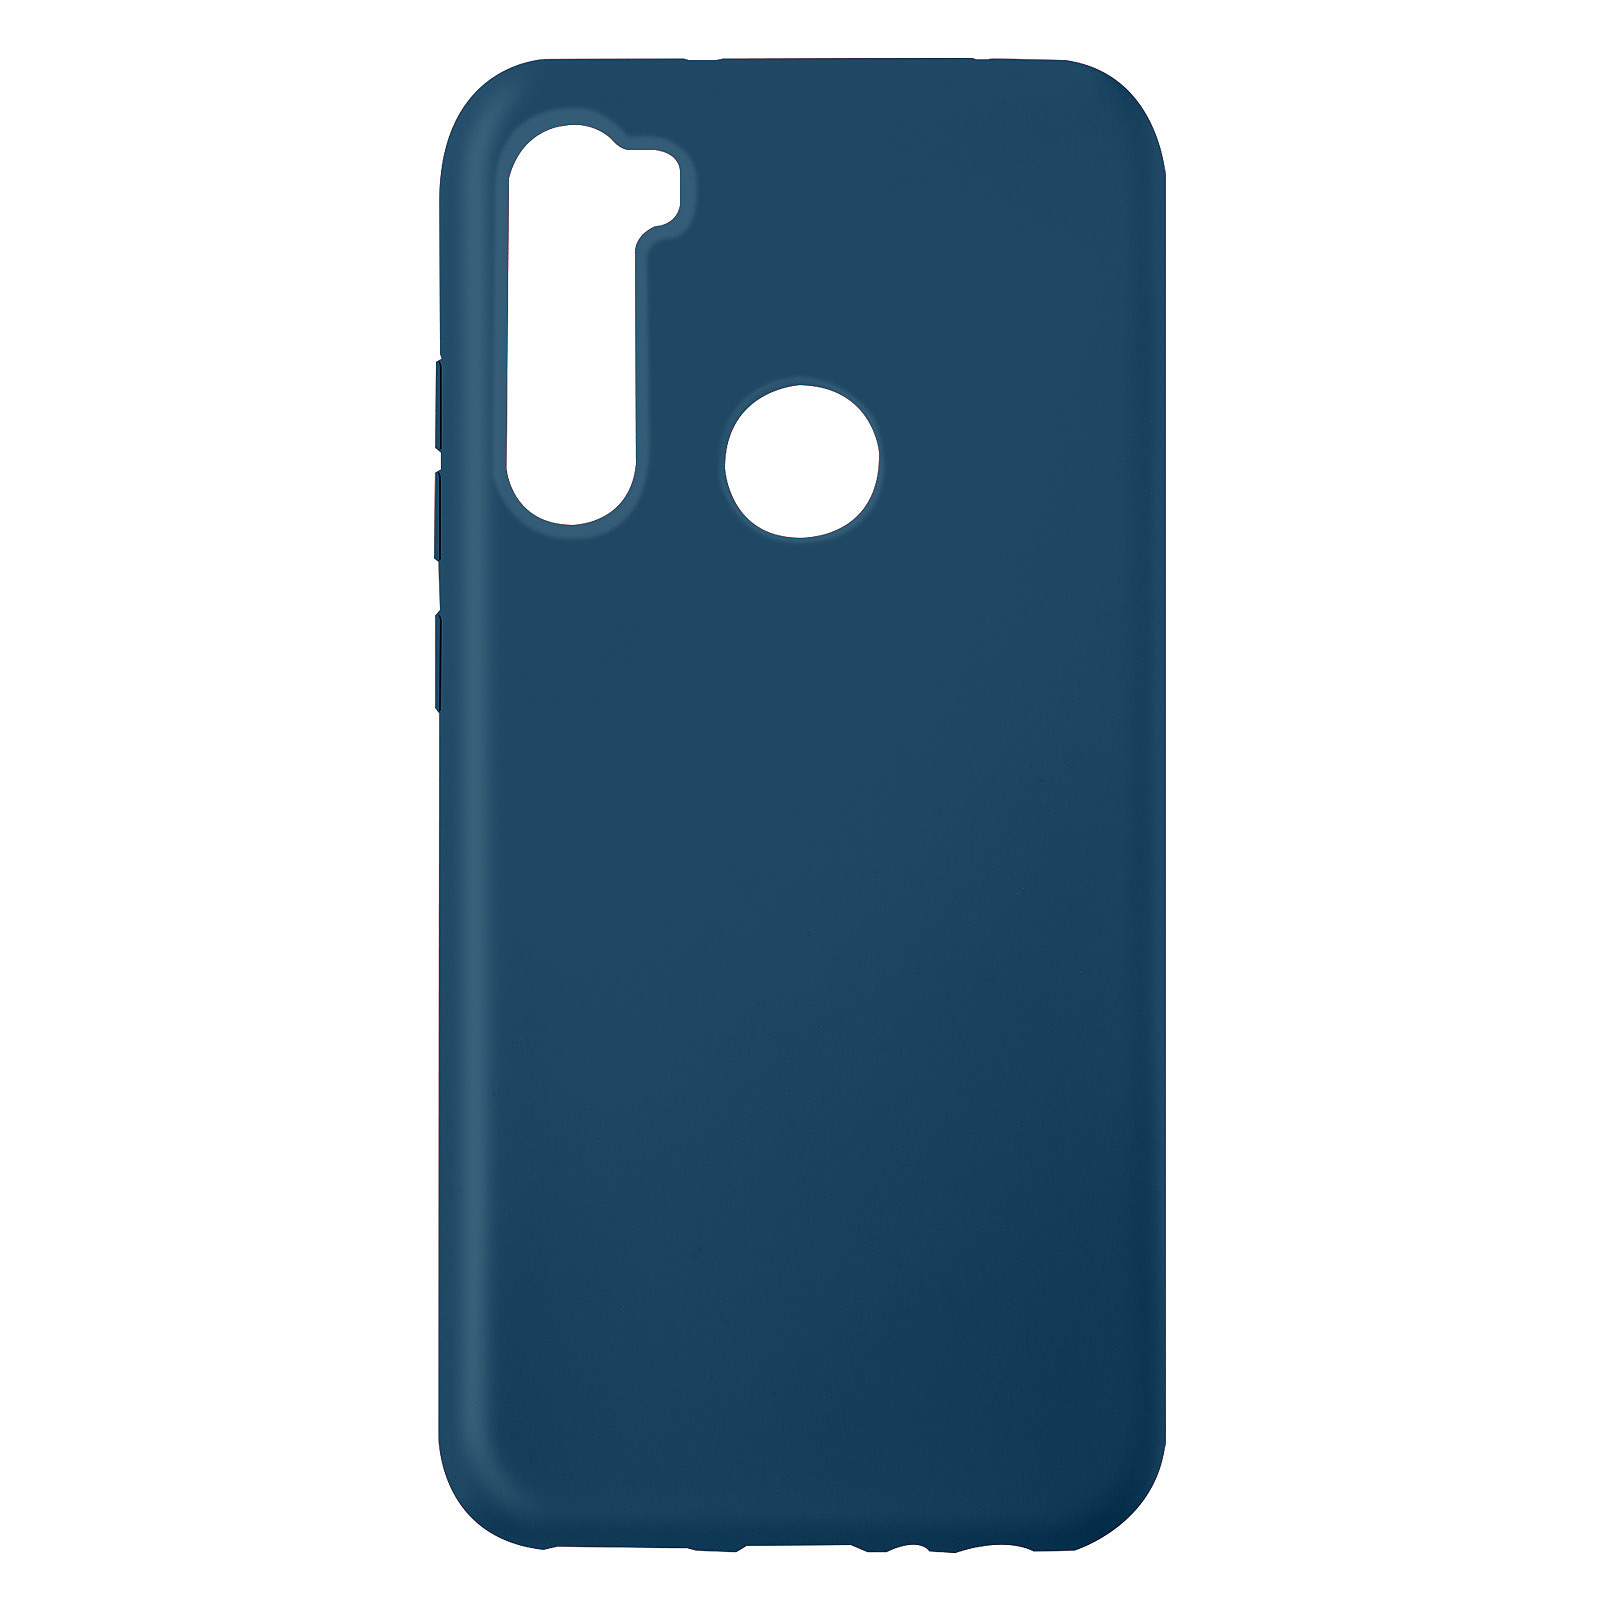 Avizar Coque pour Xiaomi Redmi Note 8 Silicone Semi-rigide Finition Soft-touch Fine Bleu - Coque telephone Avizar